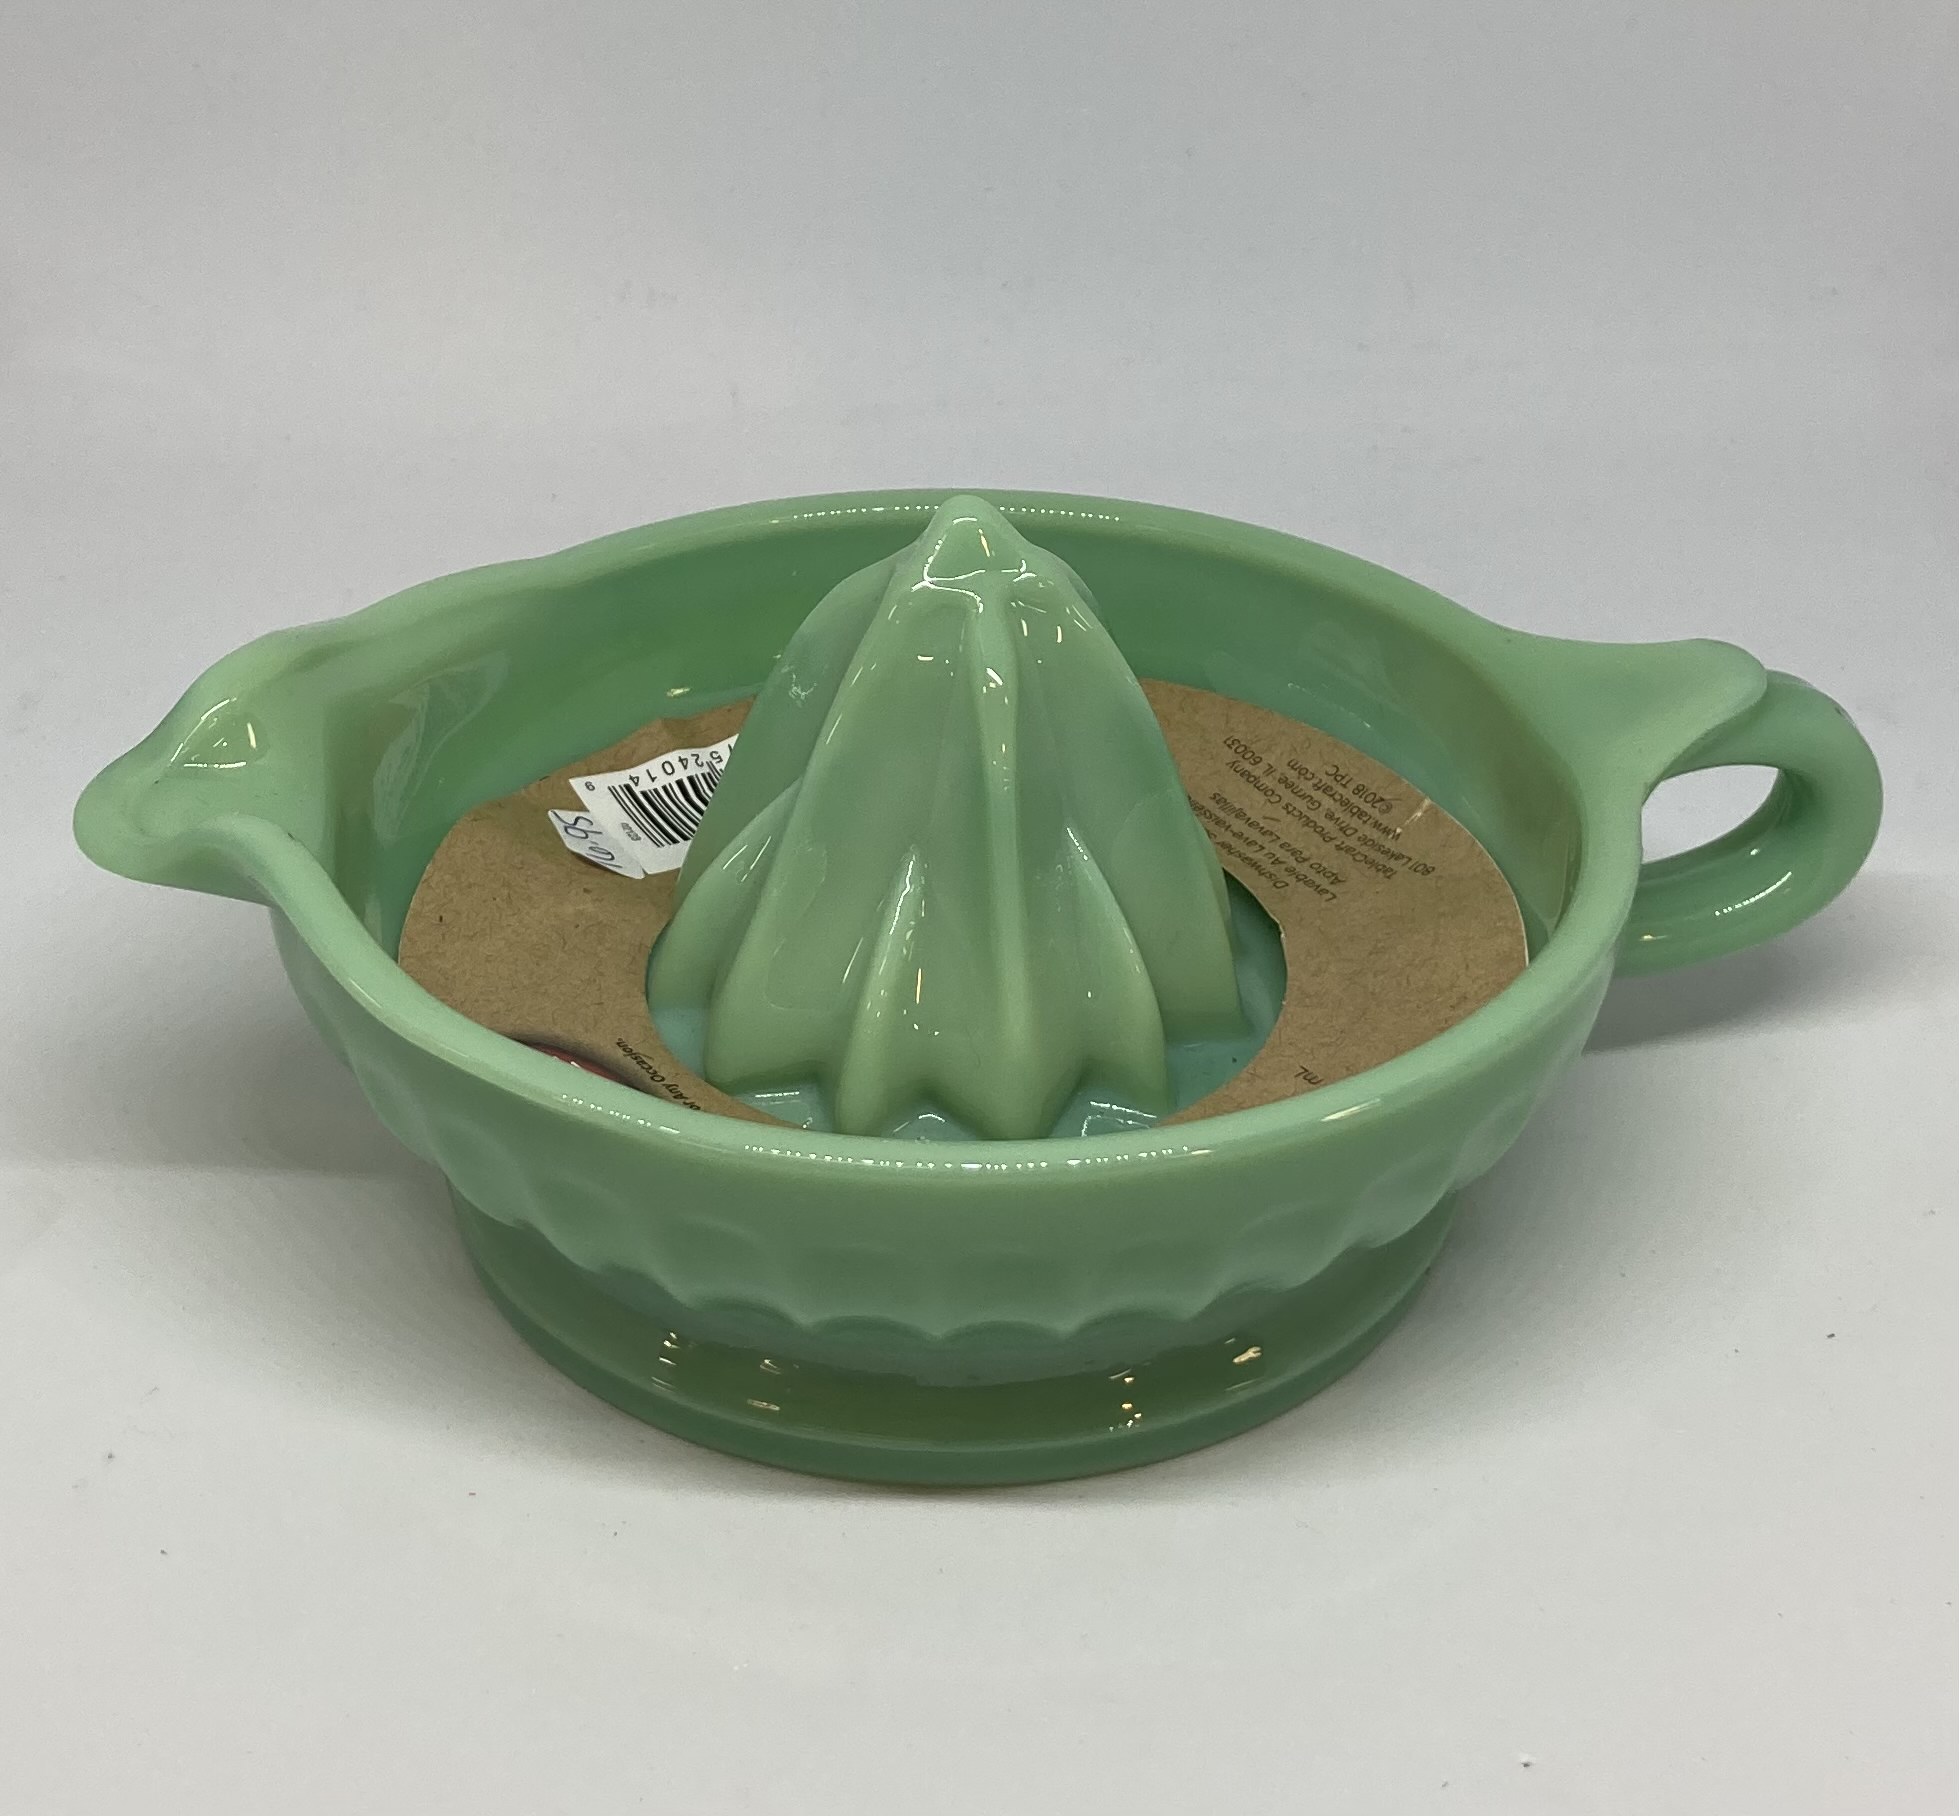 Jadeite  Vintage dishware, Green milk glass, Vintage kitchenware